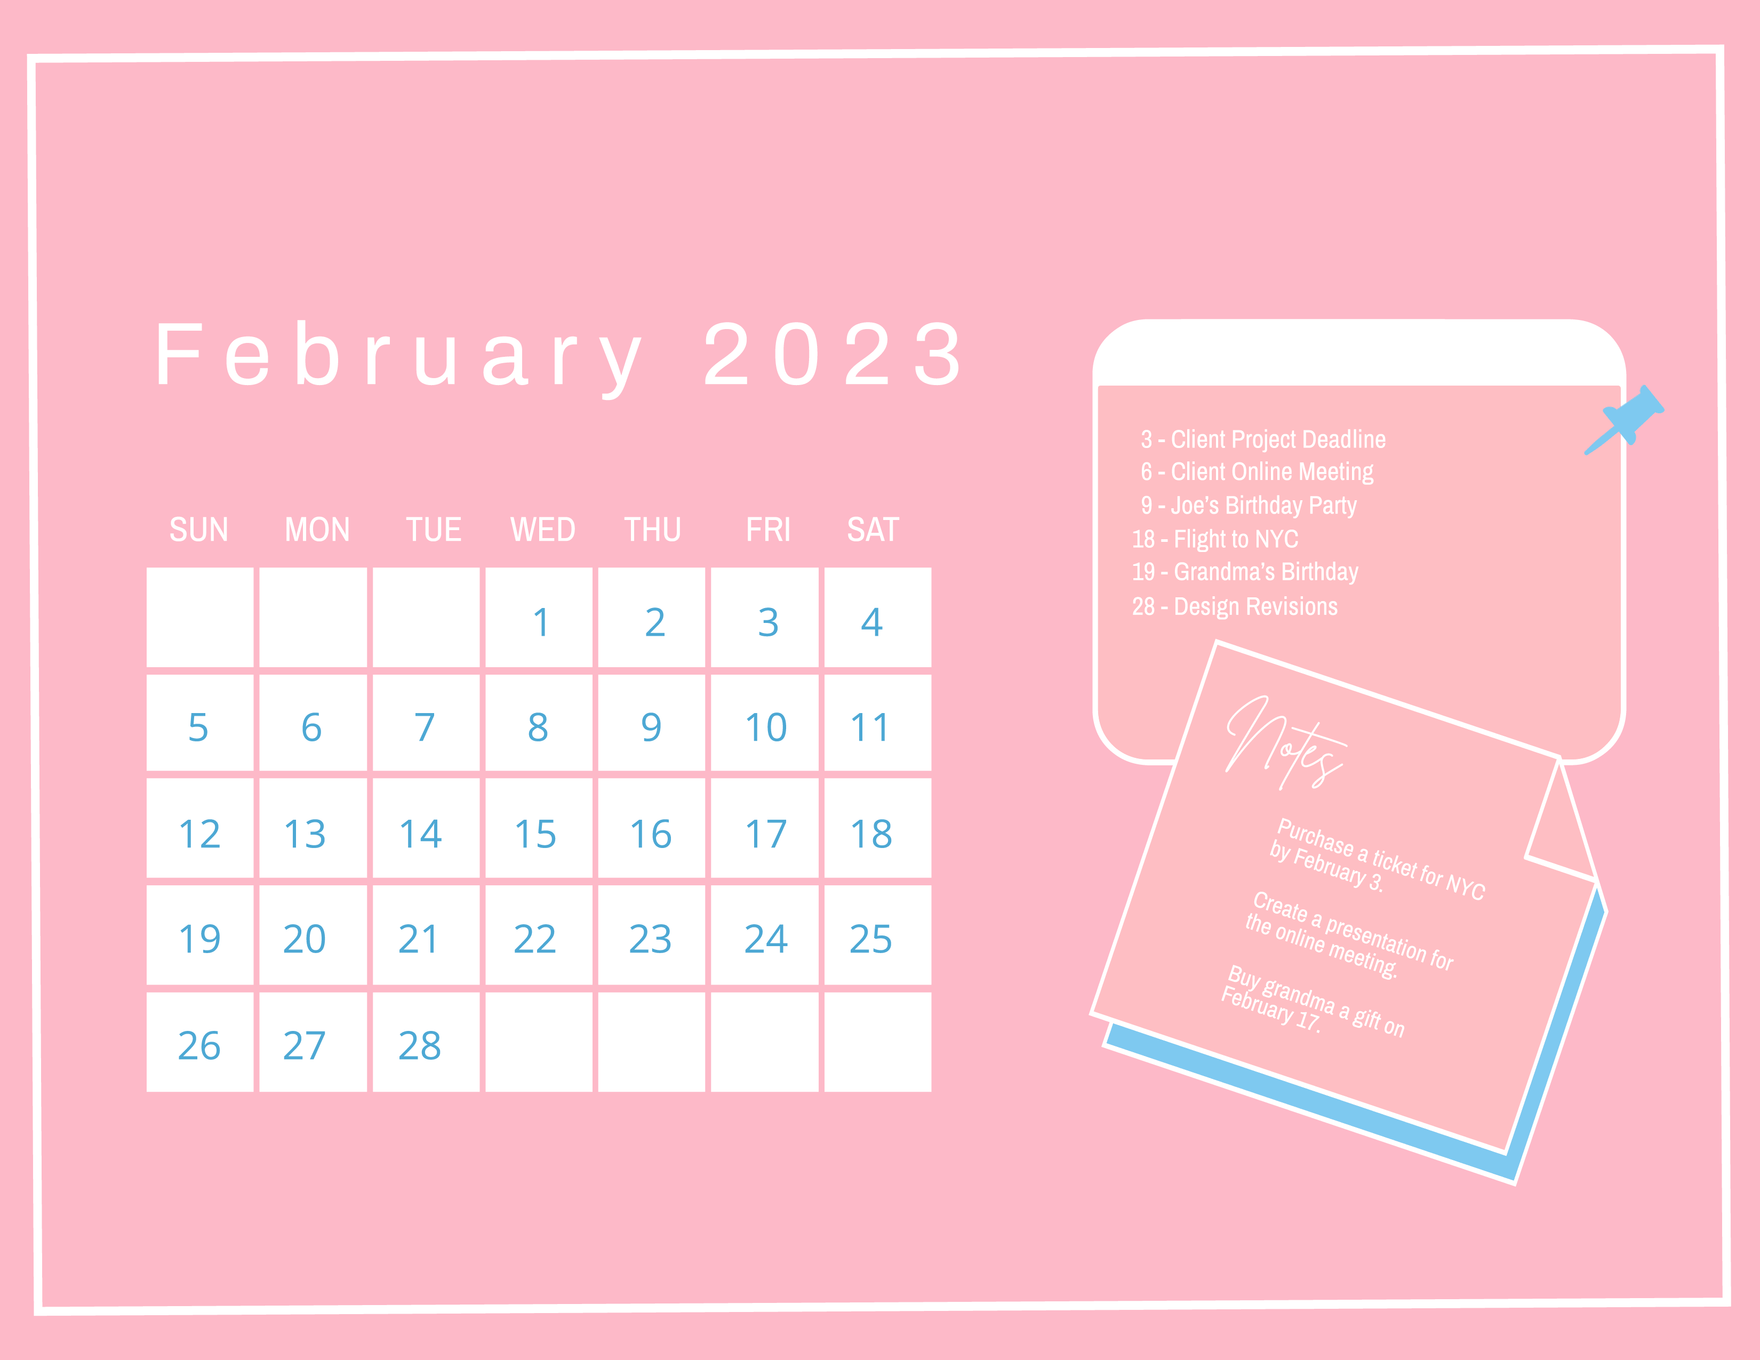 February 2023 Calendar In Word Get Calender 2023 Update 4272